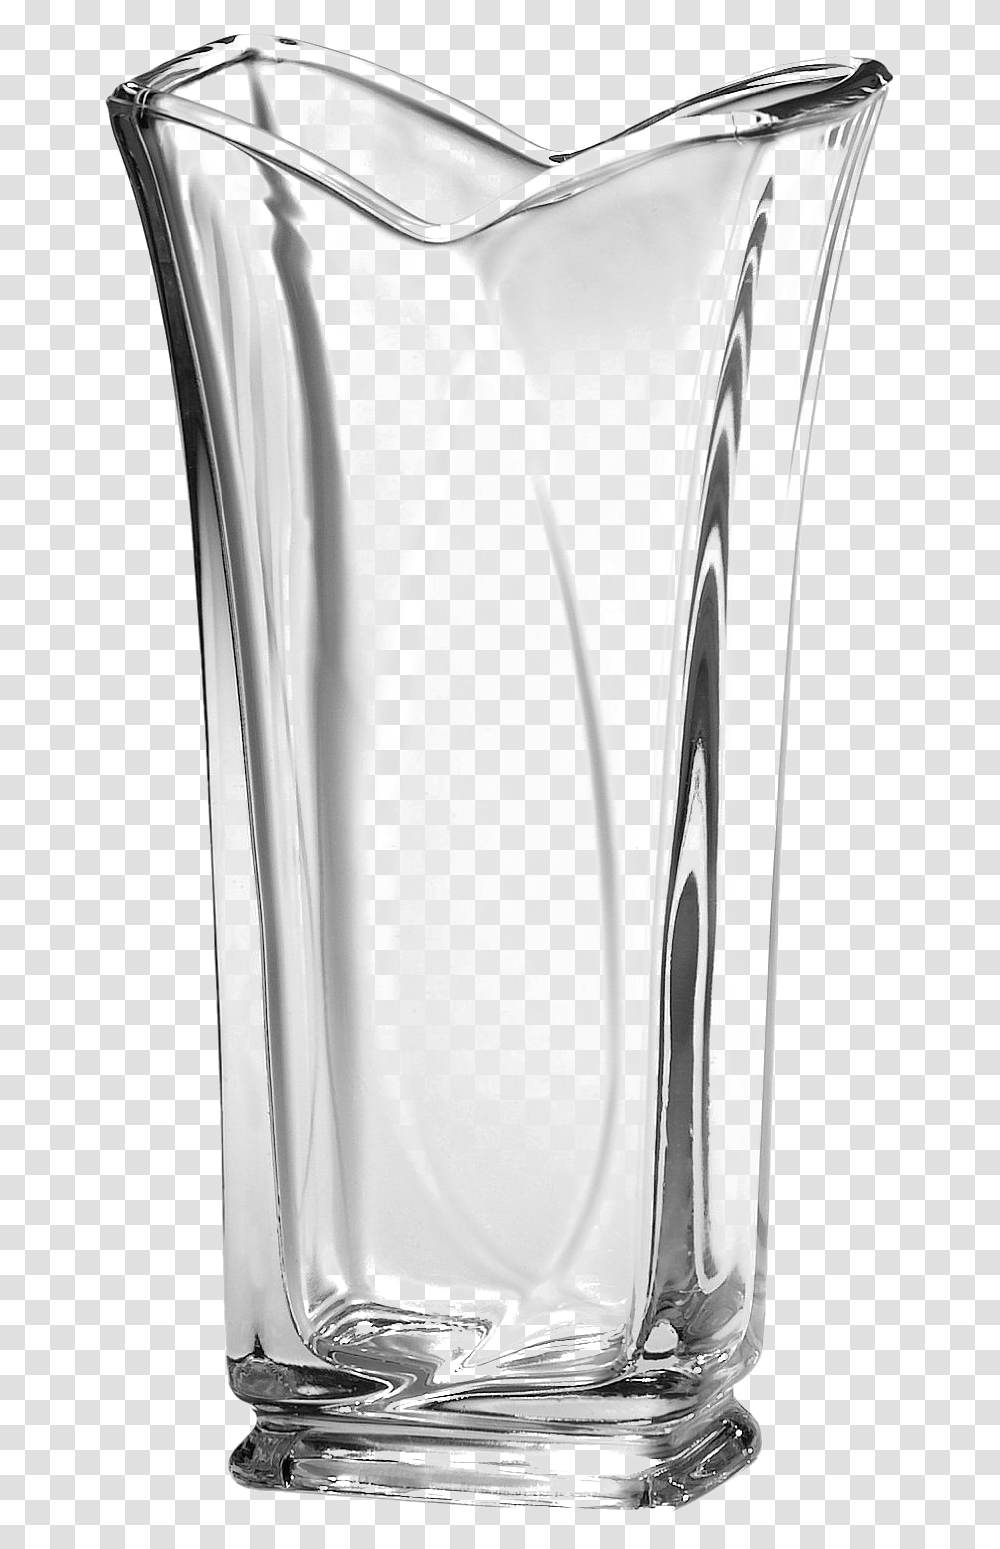 Empty Vase Photo Glass Vase, Bottle, Shaker, Goblet Transparent Png